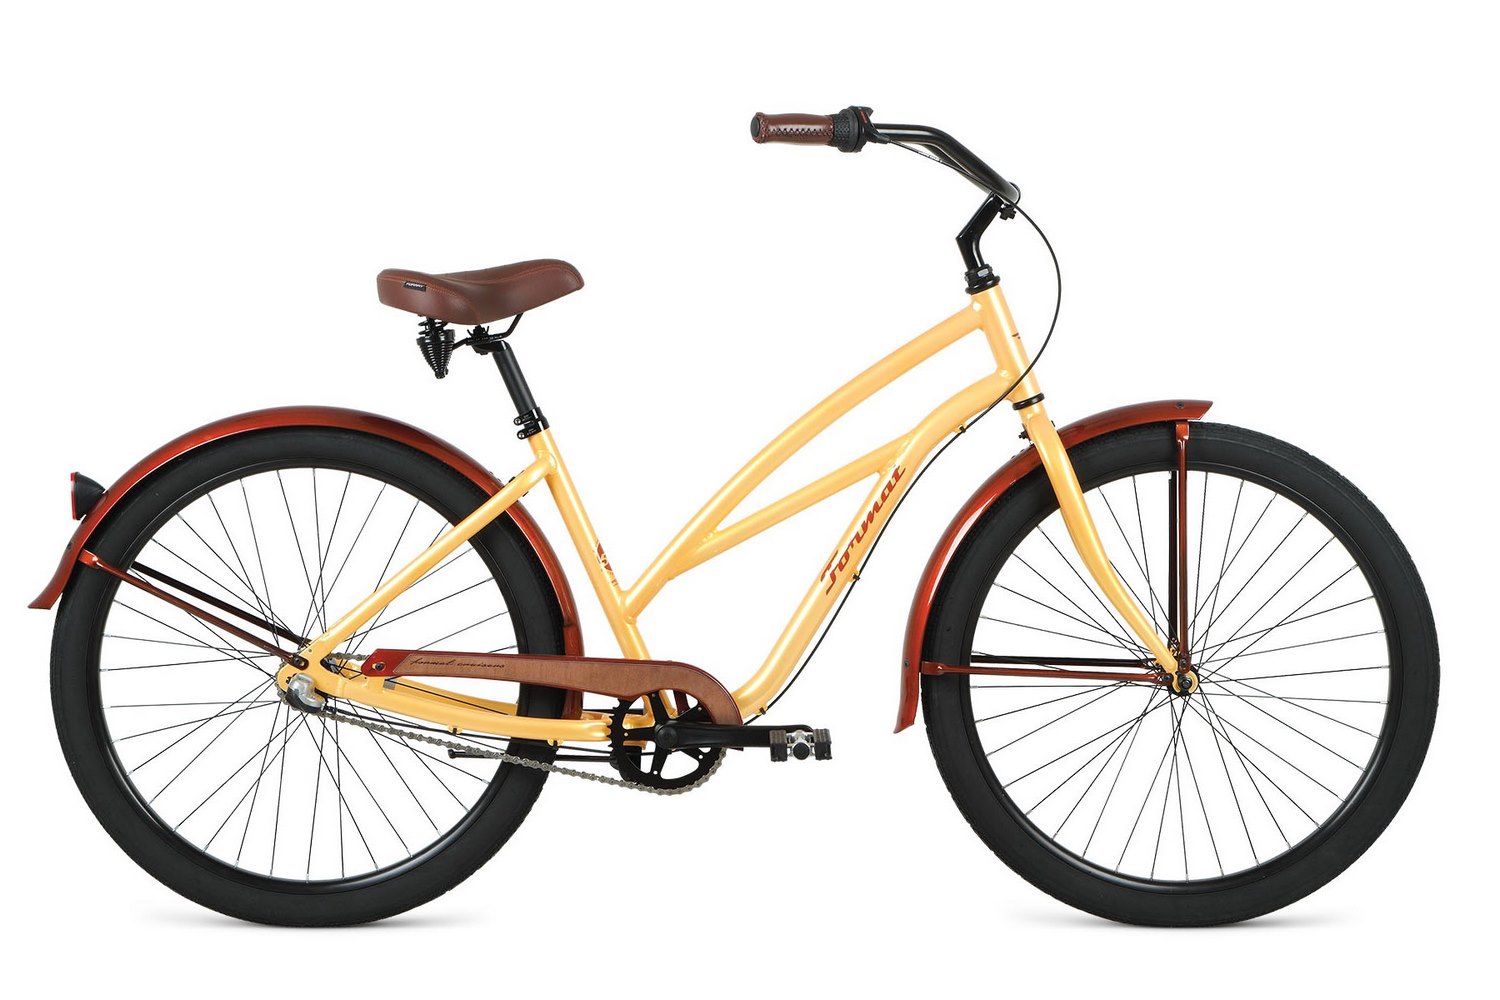  Отзывы о Городском велосипеде Format 5522 26 2019